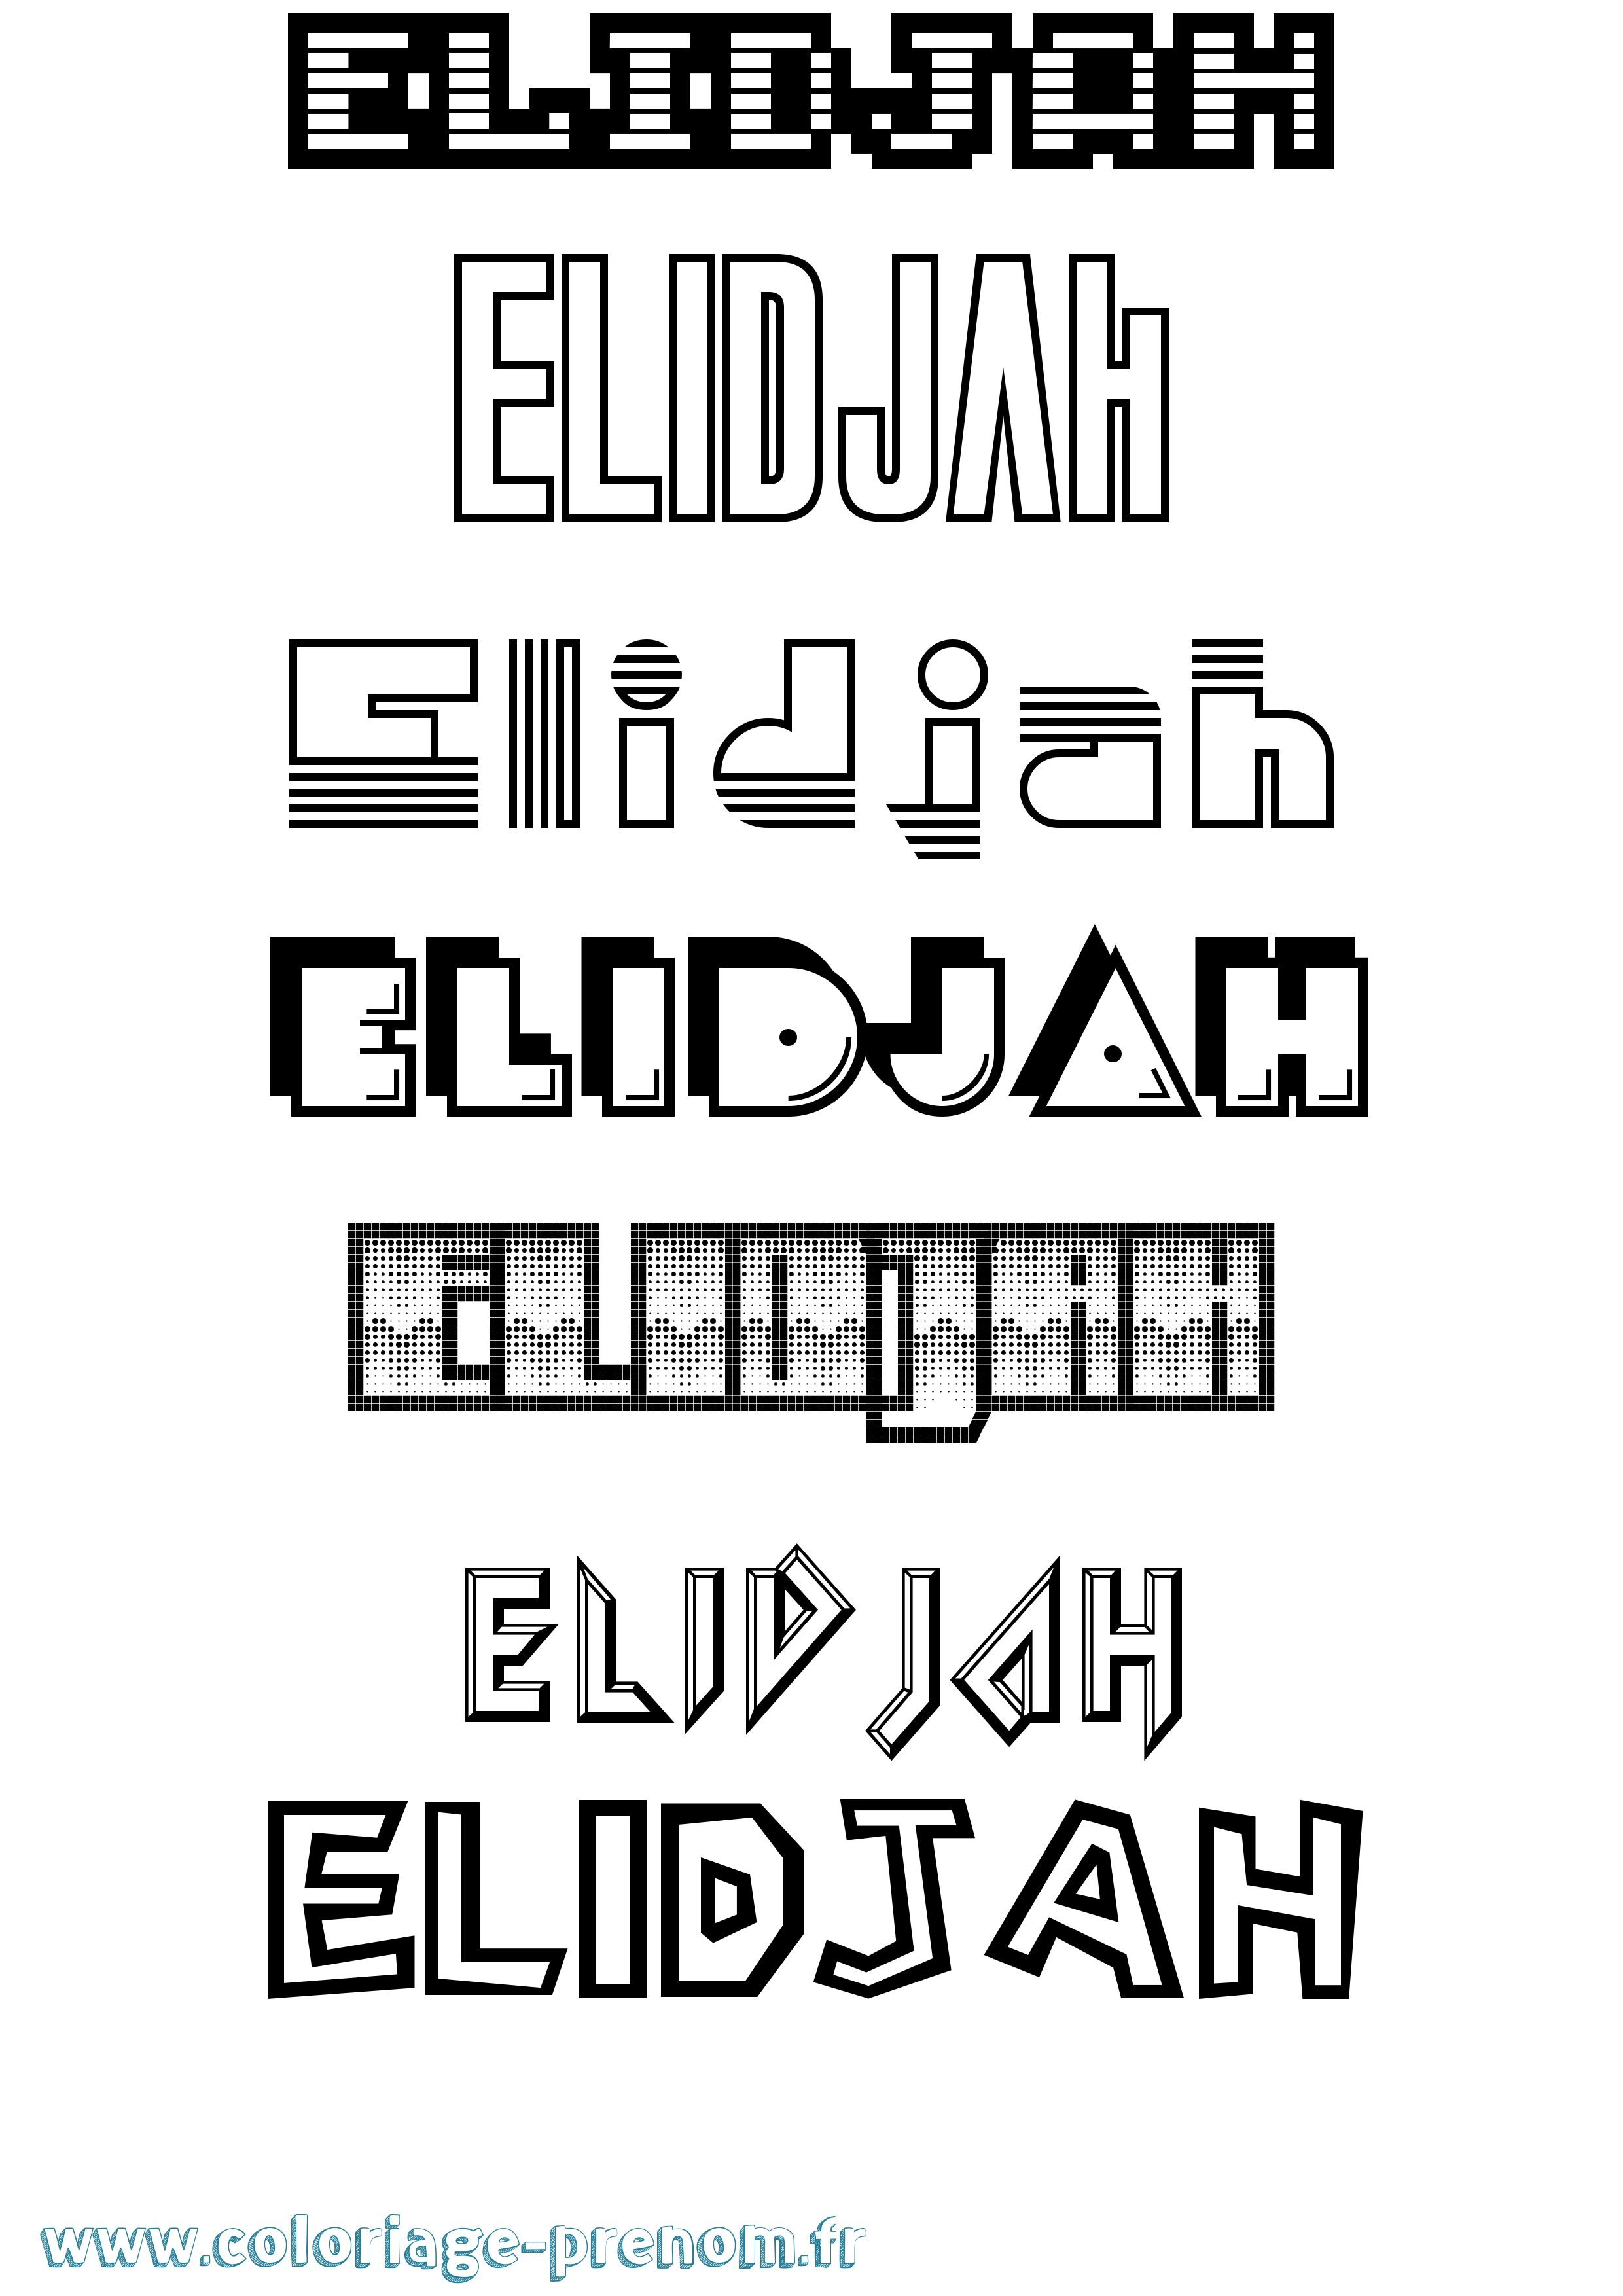 Coloriage prénom Elidjah Jeux Vidéos